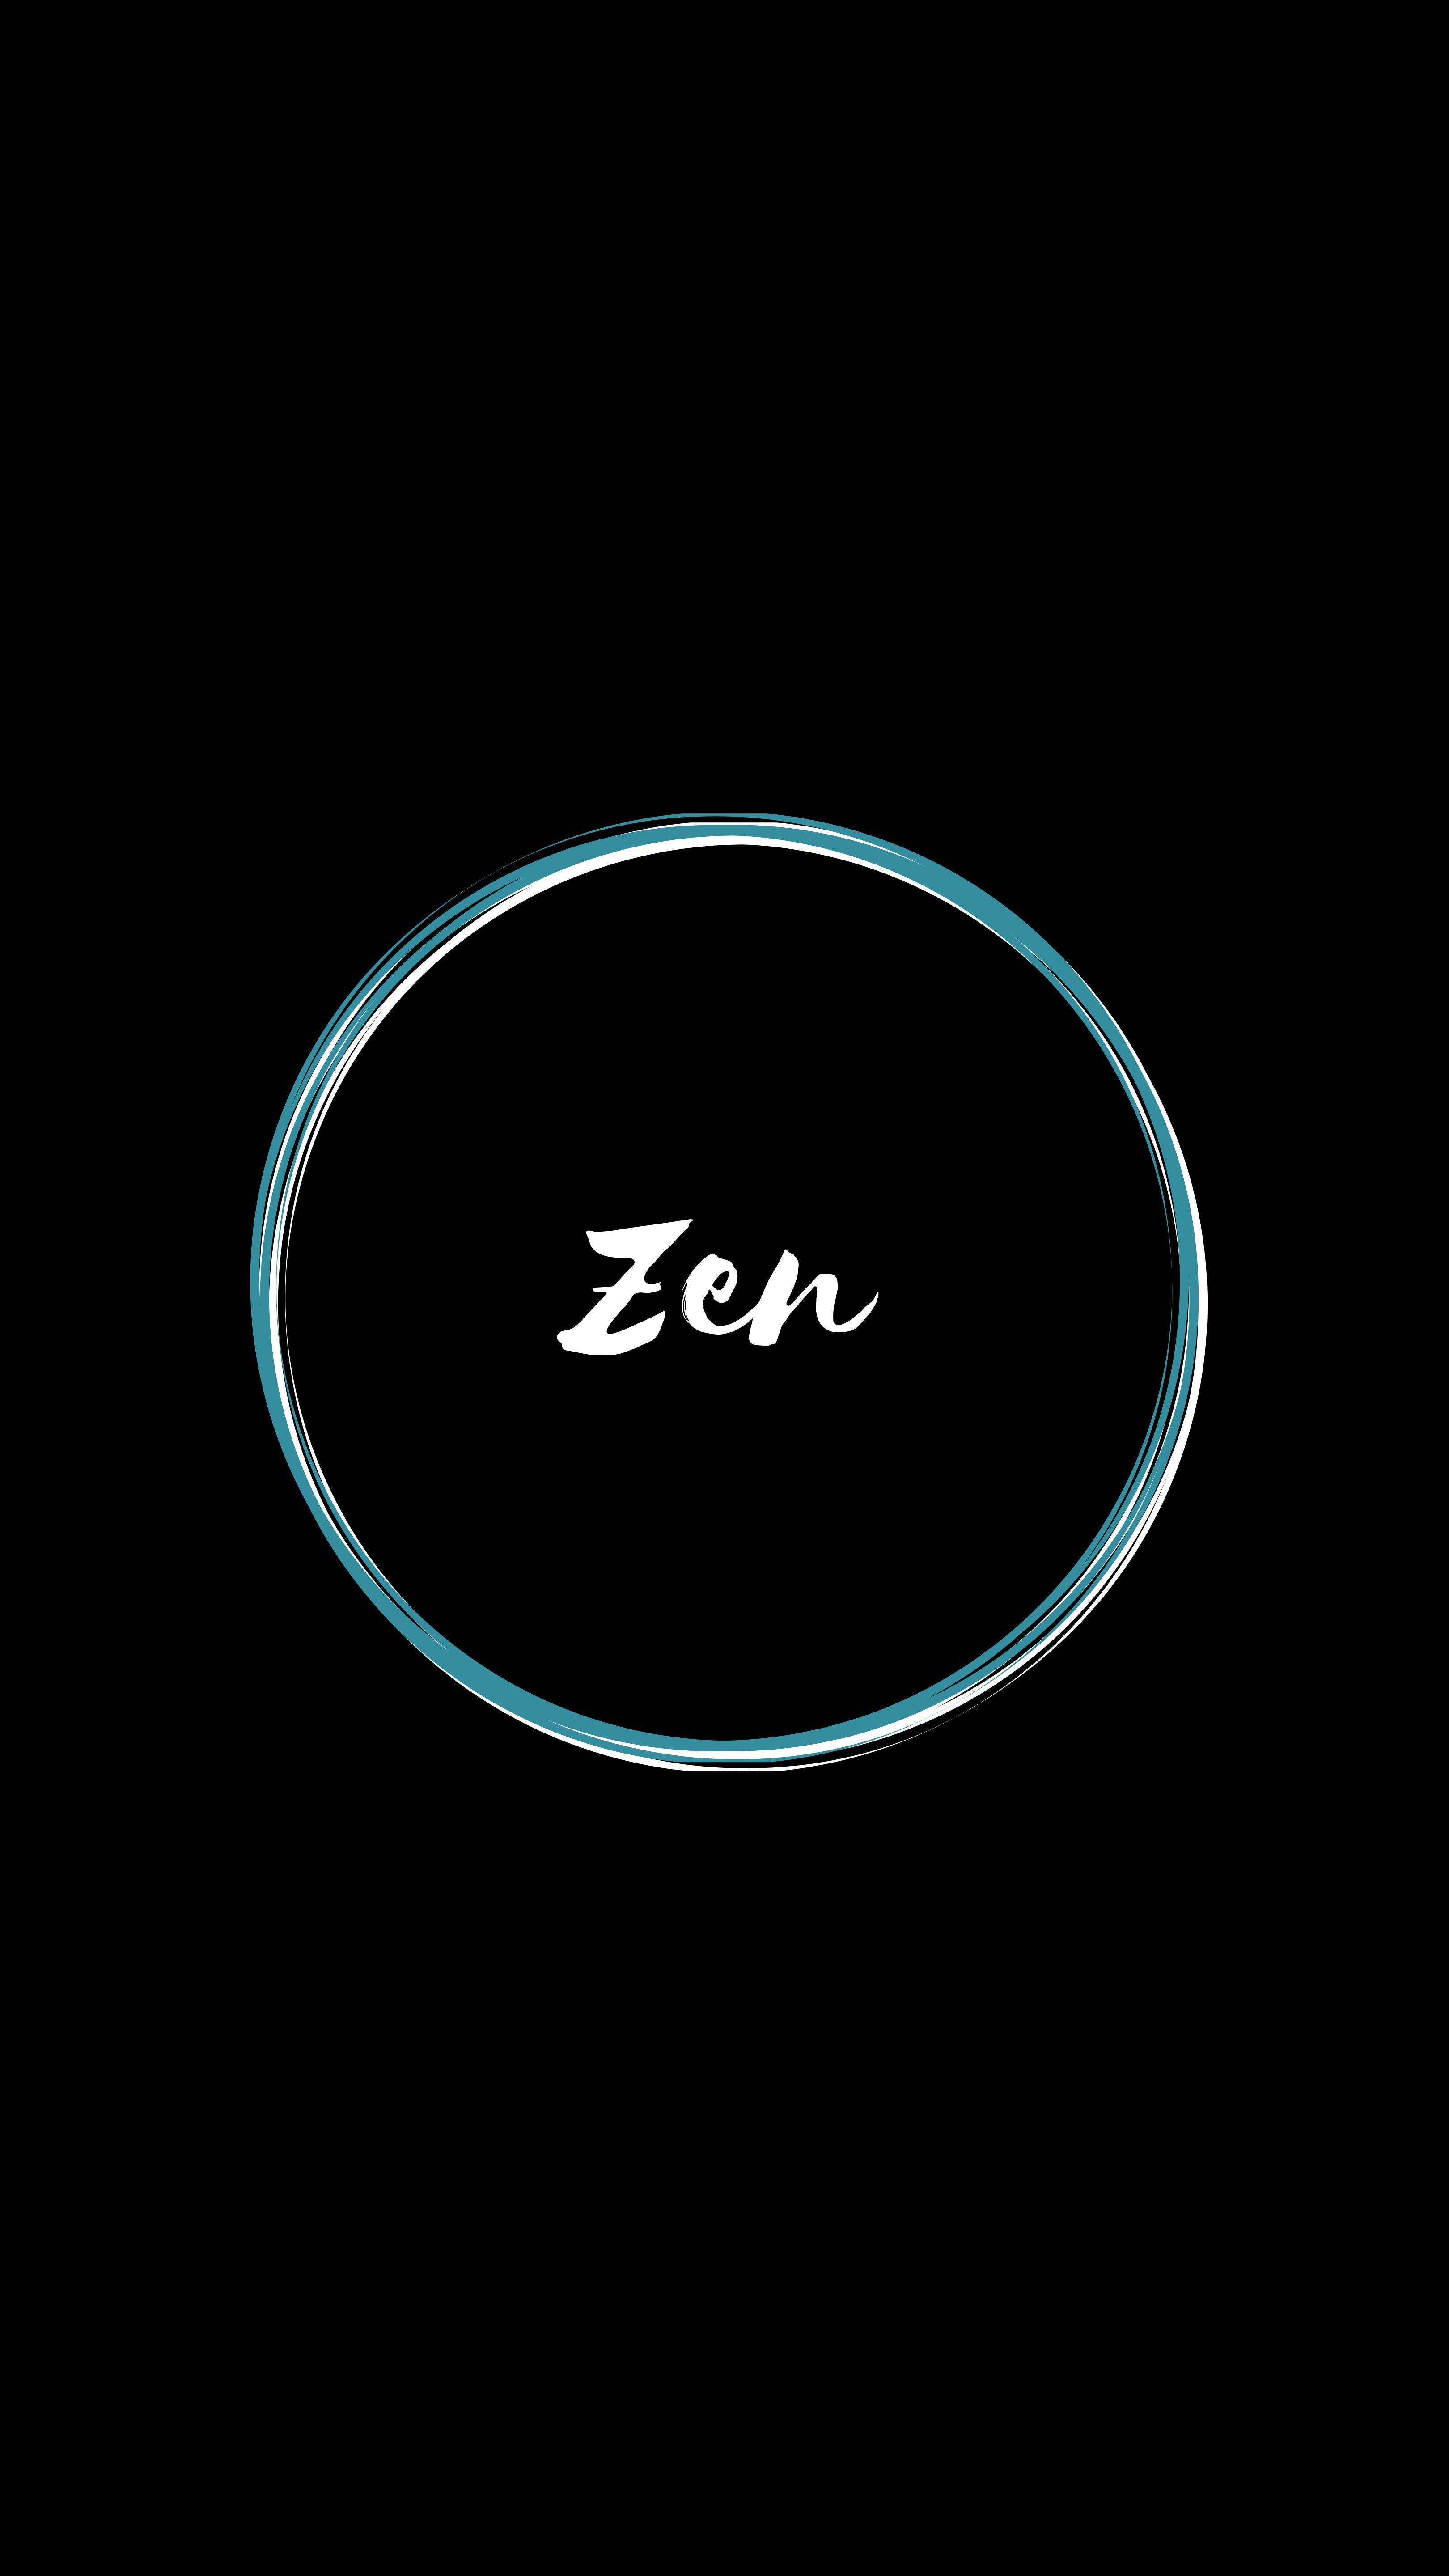  Zen Hintergrundbild 3240x5760. Download Minimalist Zen Encryption Wallpaper